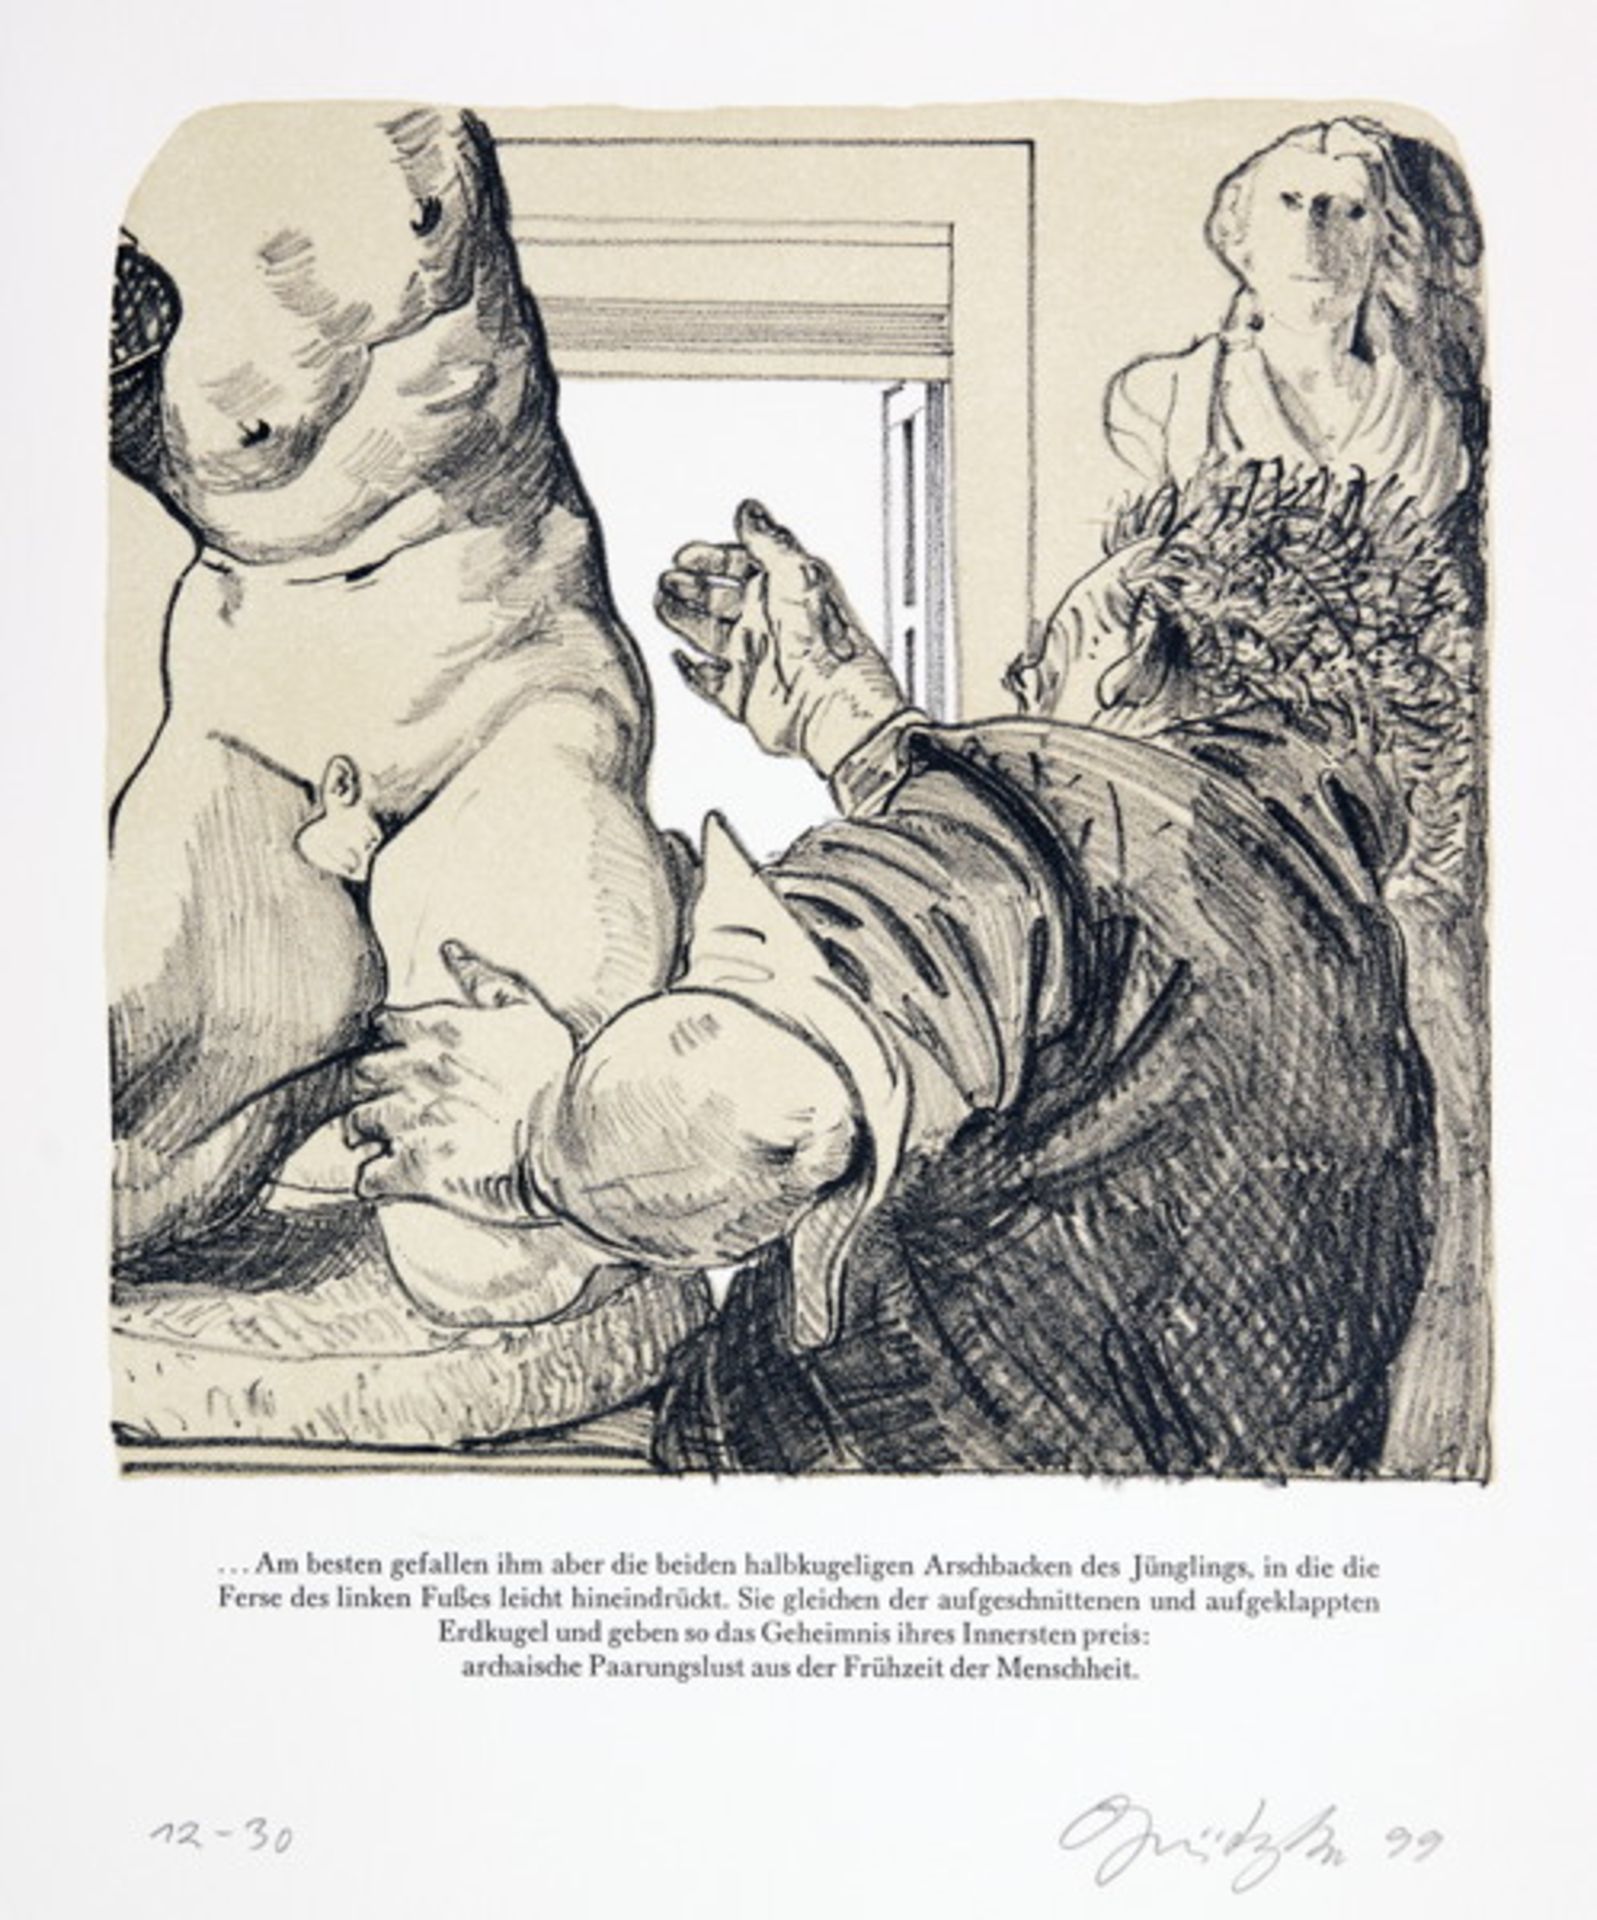 Merlin Verlag - Tod in Weimar. 16 Lithografien von Johannes Grützke zu der Novelle von Henning - Image 2 of 2